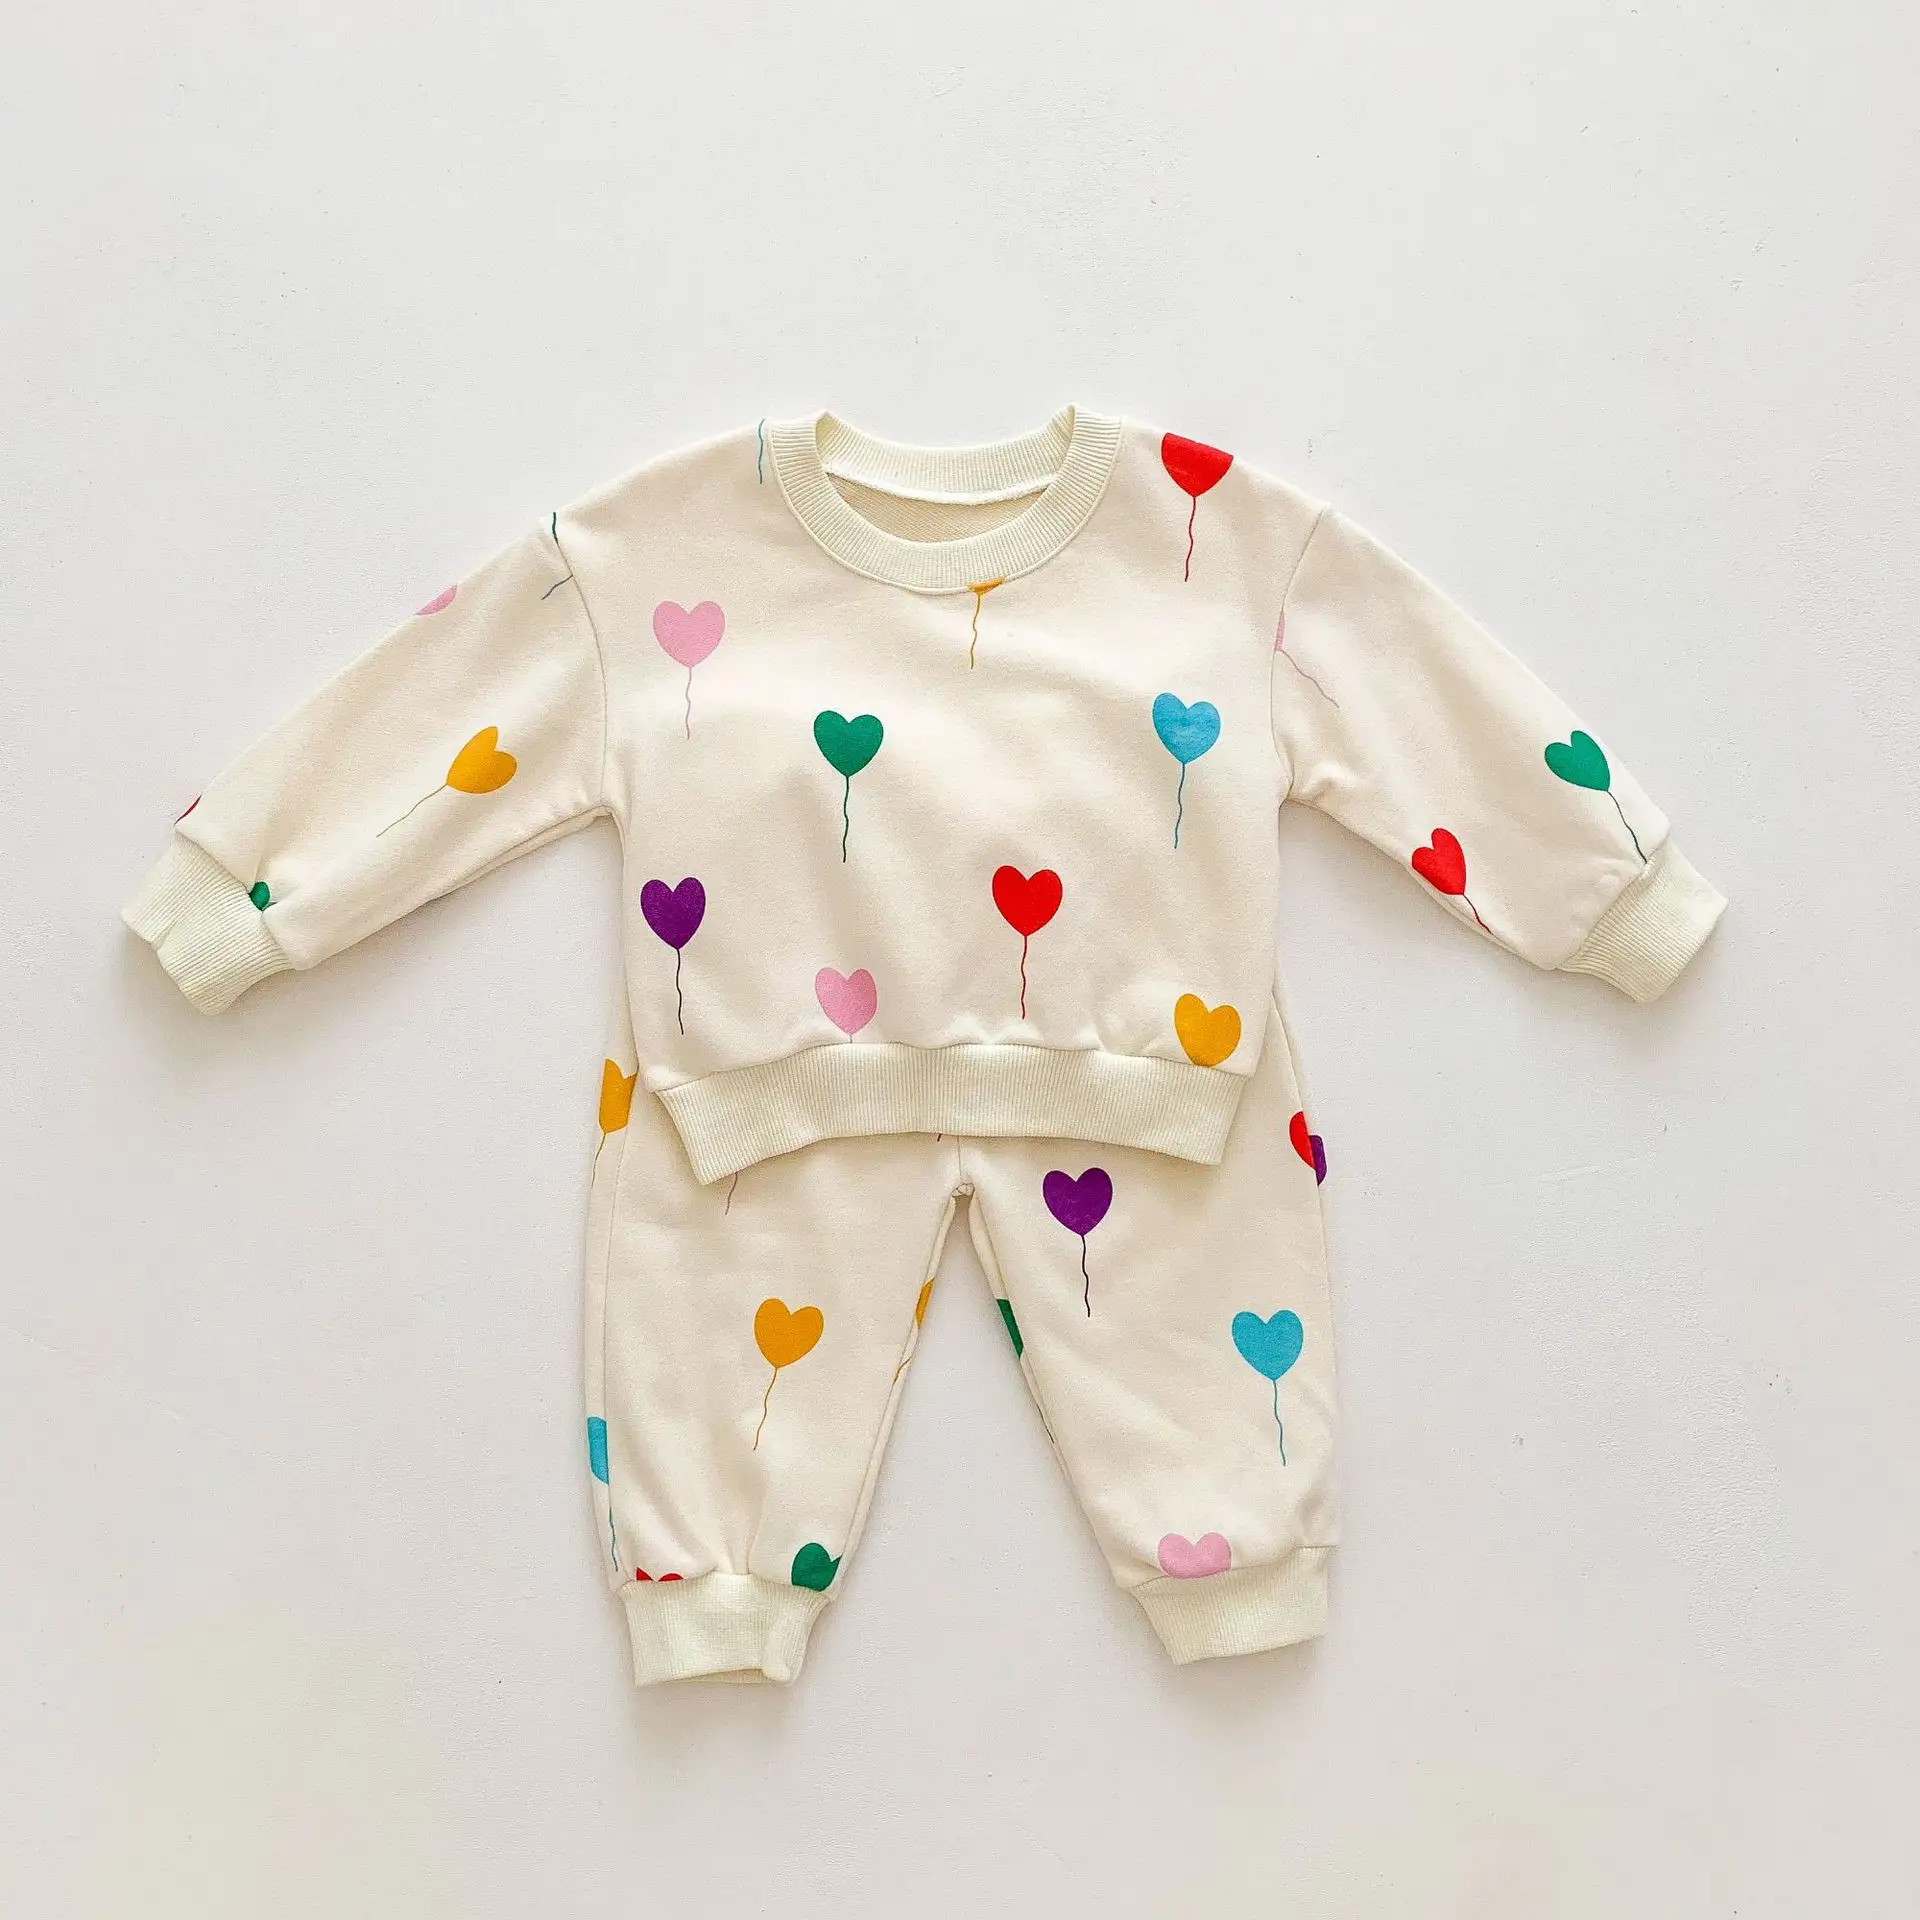 Sonbahar bebek giyim seti kalp baskı bebek kız Hoodie Suit Casual erkek ve kız bebek giysileri tişörtü Suit